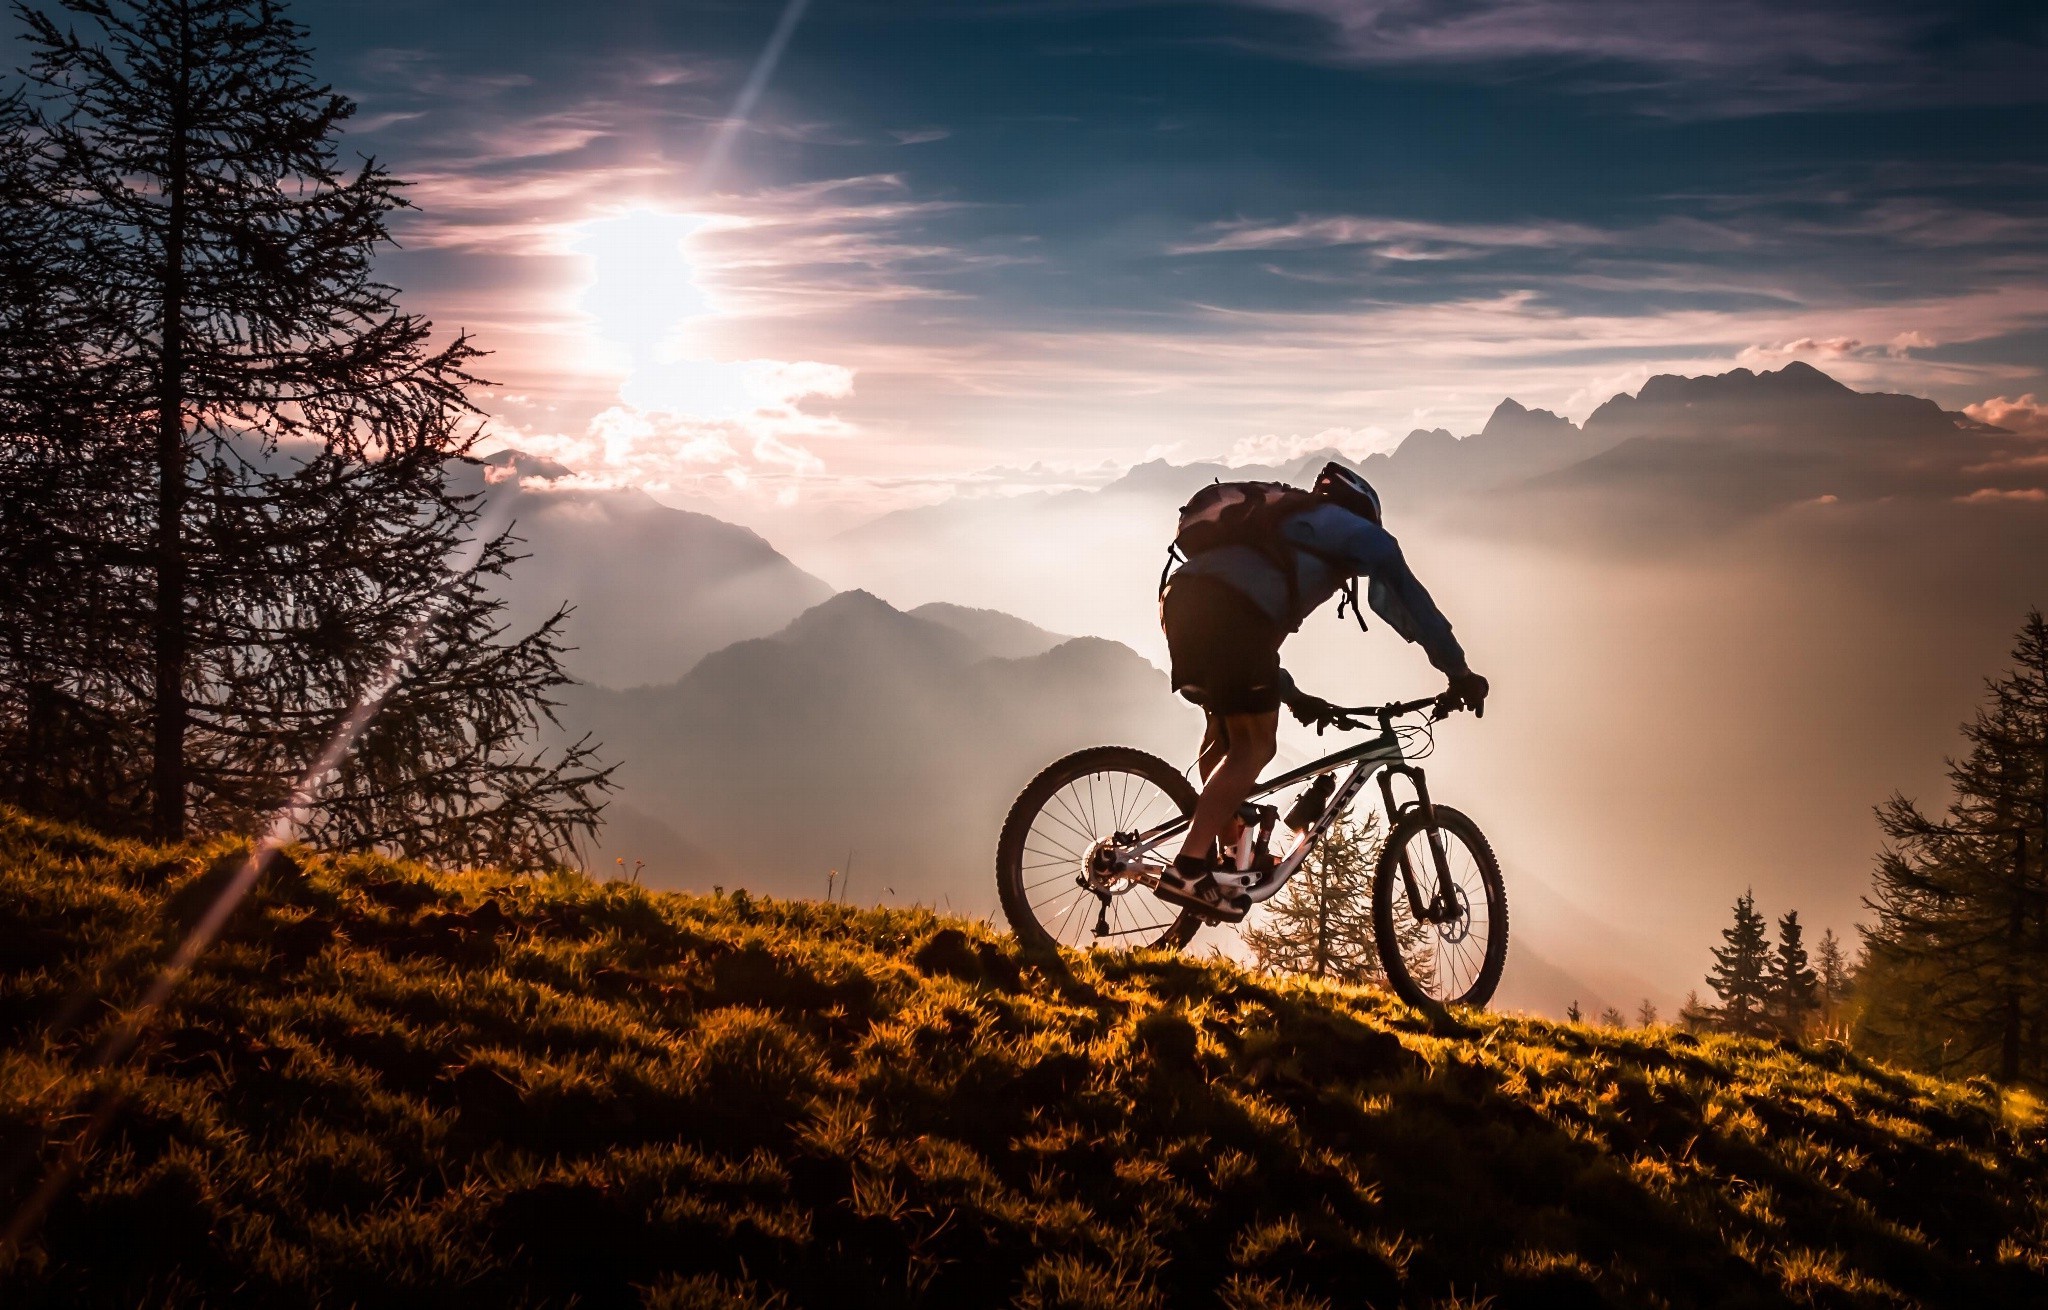 sfondi per biciclette hd,andare in mountain bike,bicicletta,mountain bike in discesa,ciclismo,mountain bike